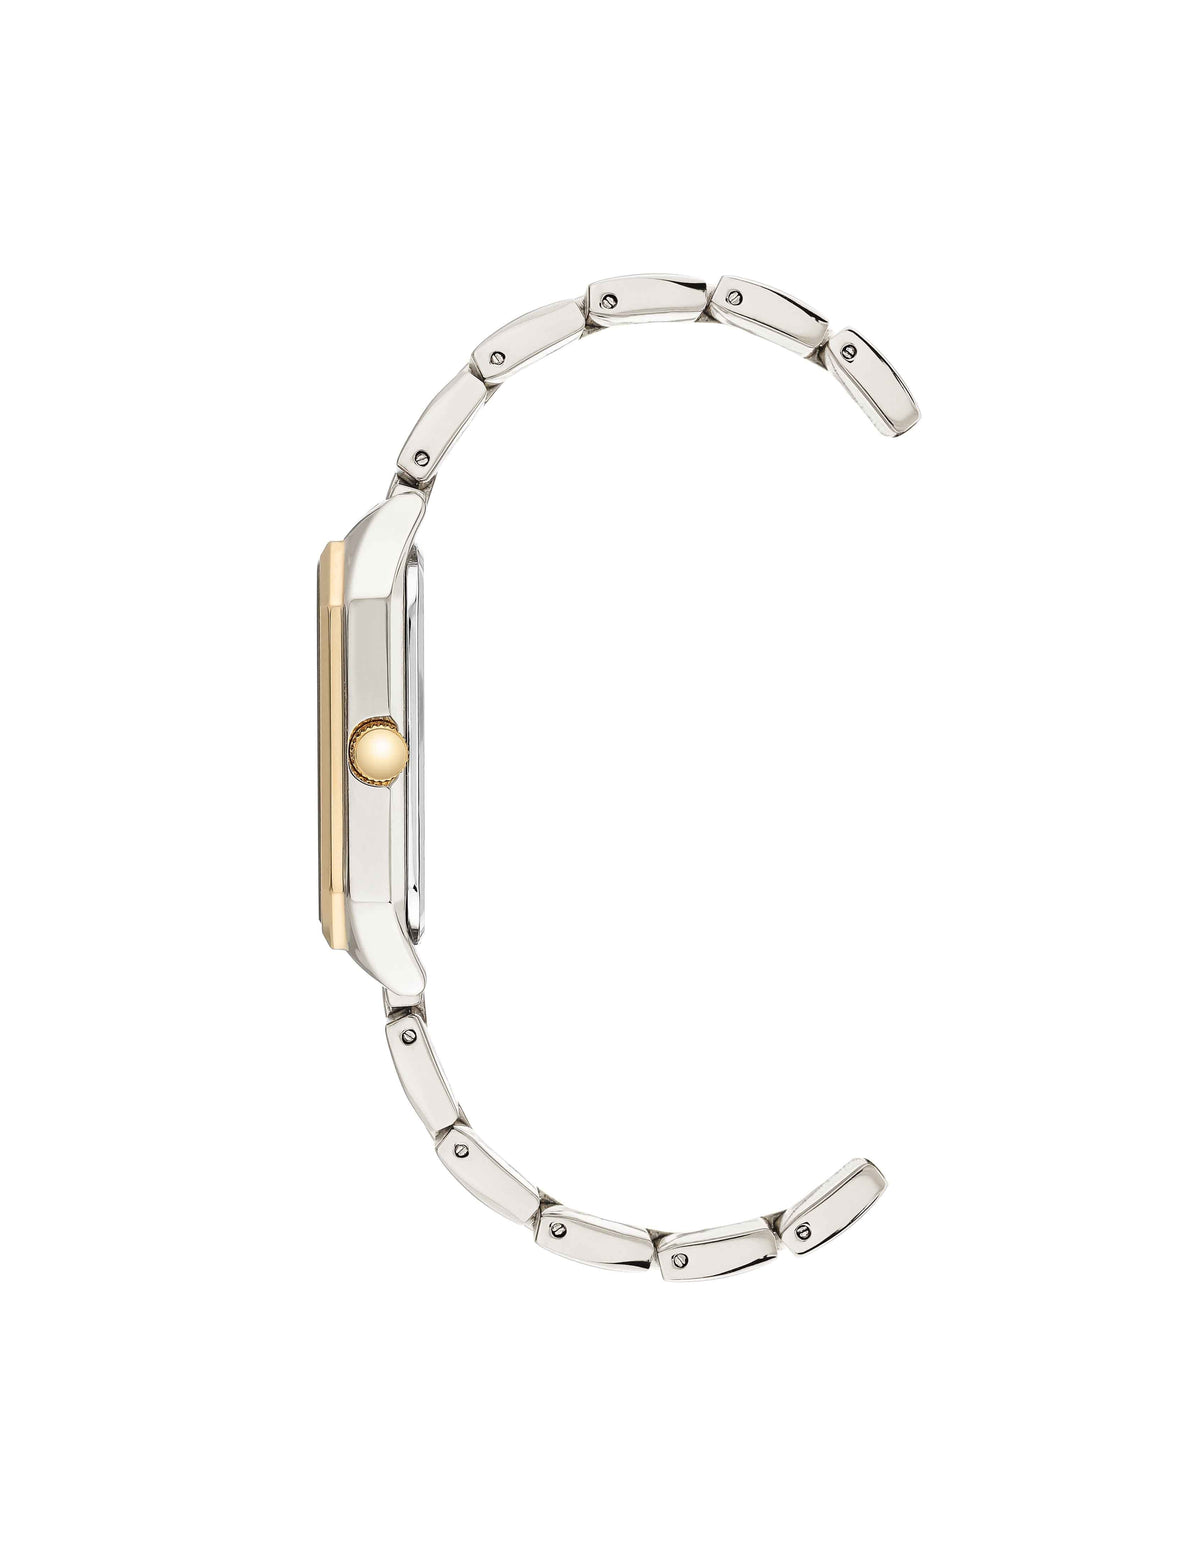 Octagonal Shaped Metal Bracelet Watch